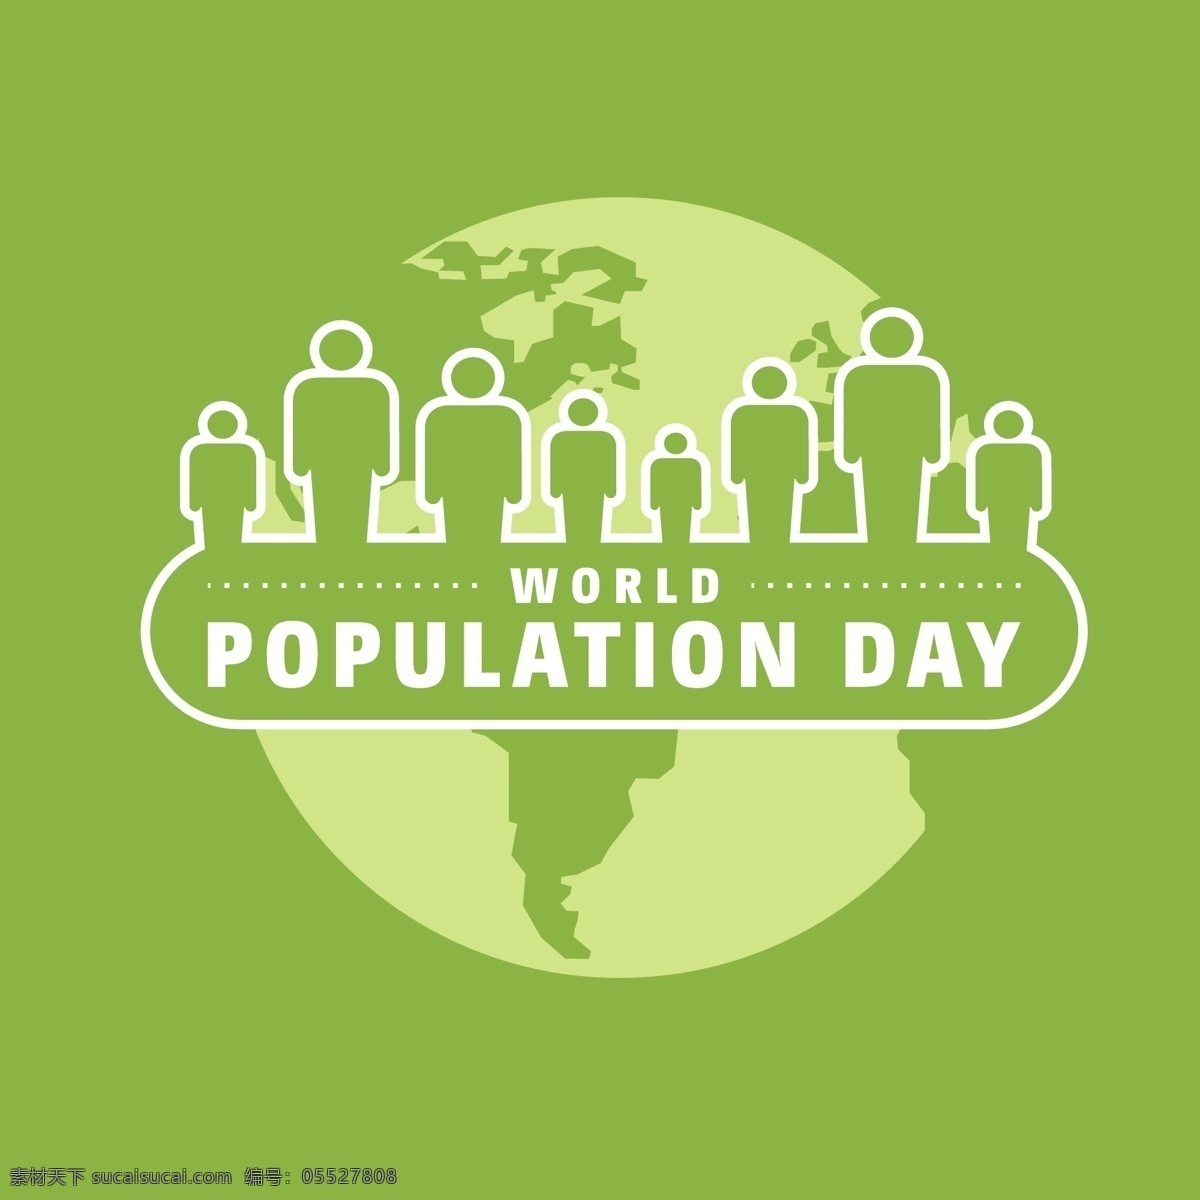 世界人口日 世界人口地图 人口统计 世界地图 绿色